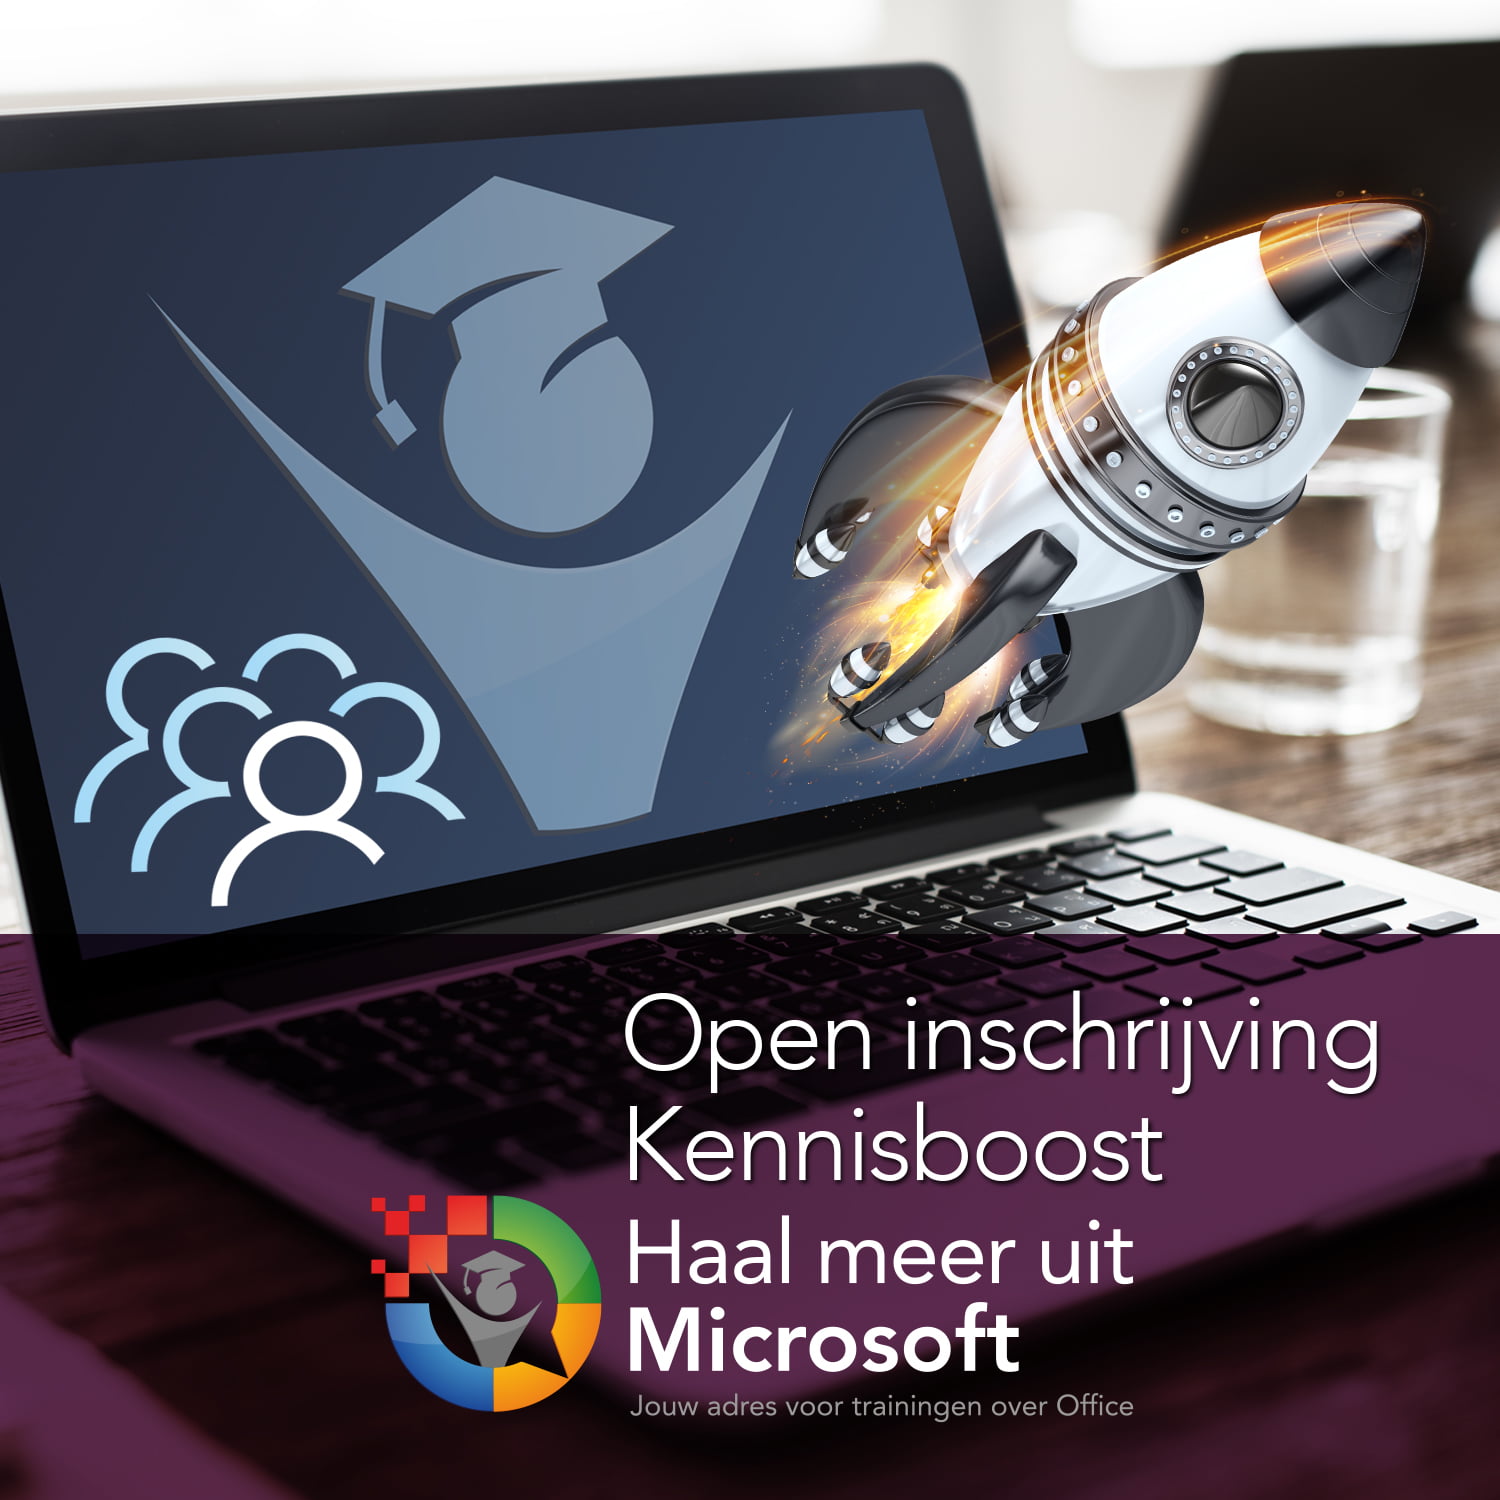 Open inschrijving Kennisboost Haal meer uit Microsoft